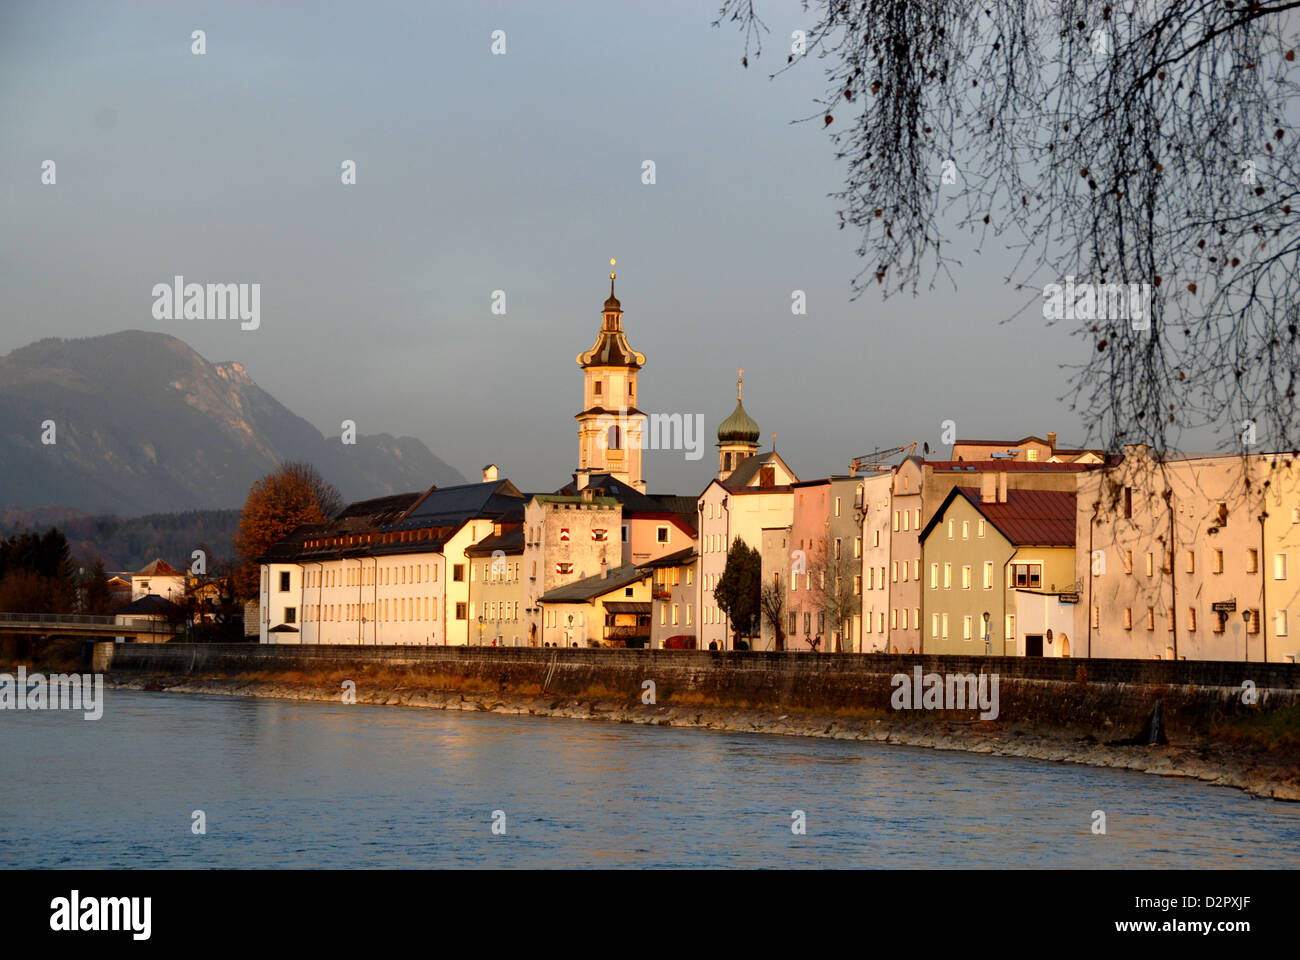 La ville de Rattenberg sur la rivière Inn, Tyrol, Autriche Banque D'Images